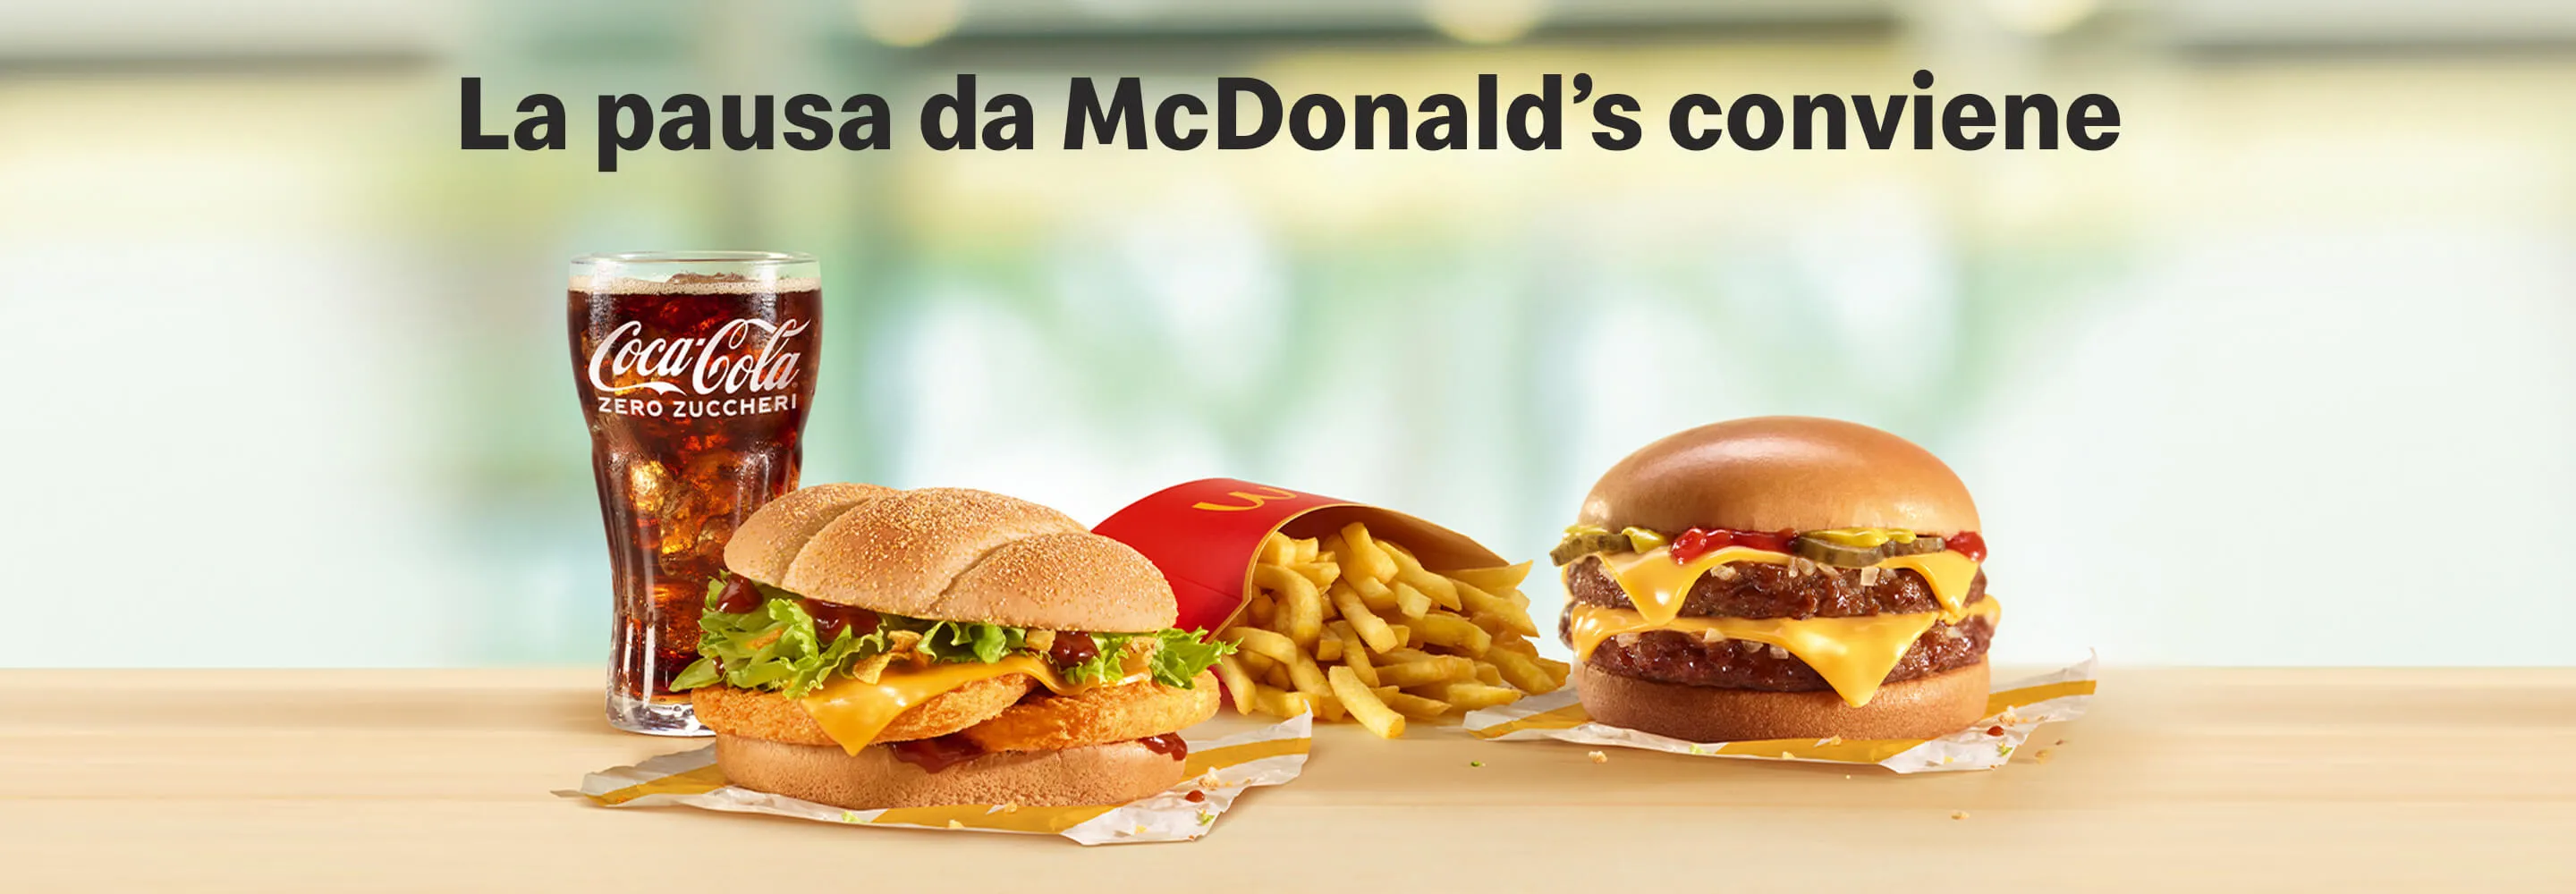 La pausa da McDonald’s conviene